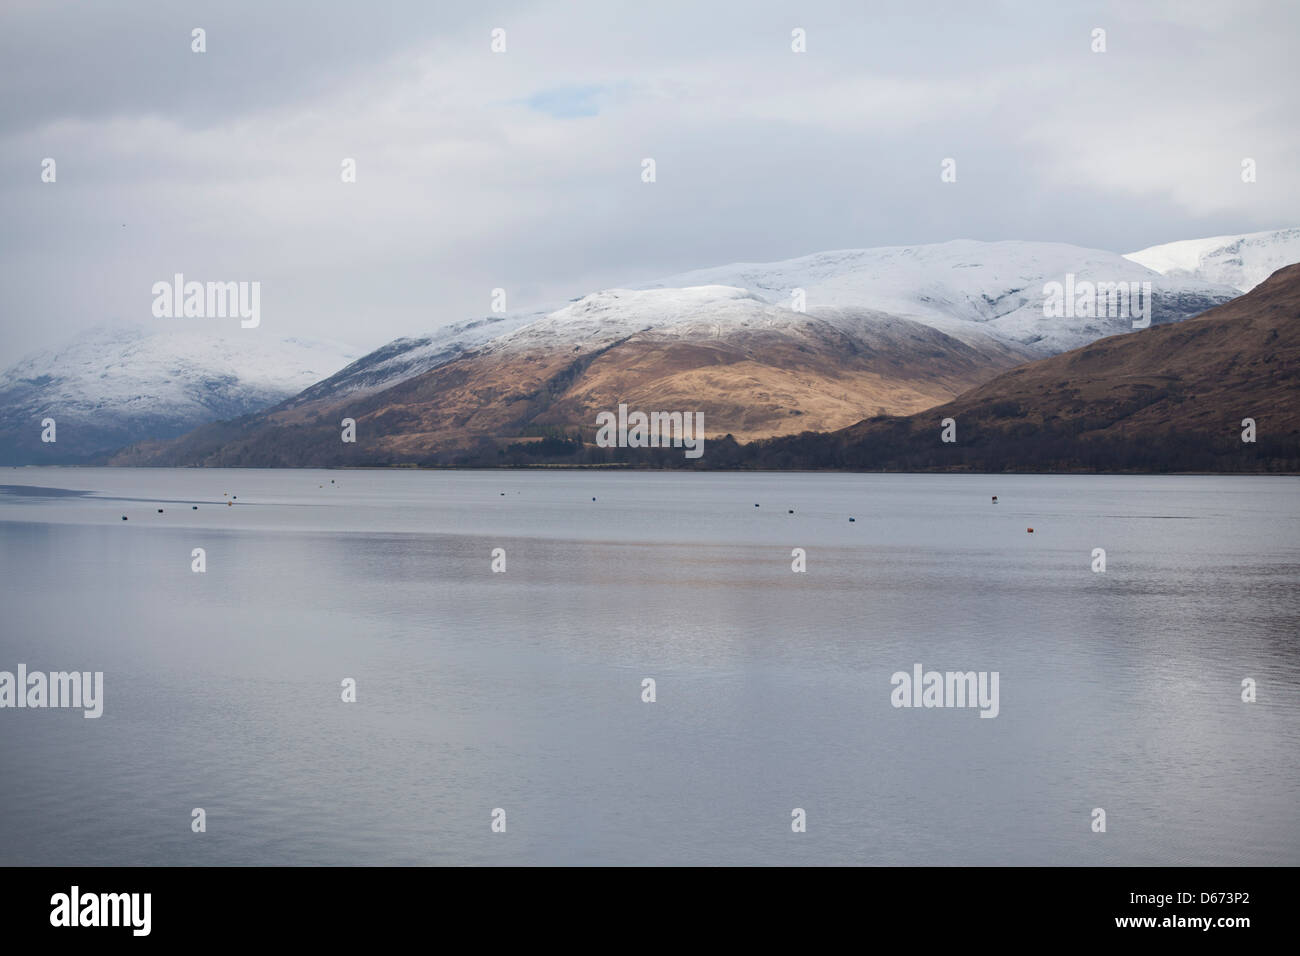 Loch Eil nel lochaber regione delle Highlands occidentali della Scozia Foto Stock